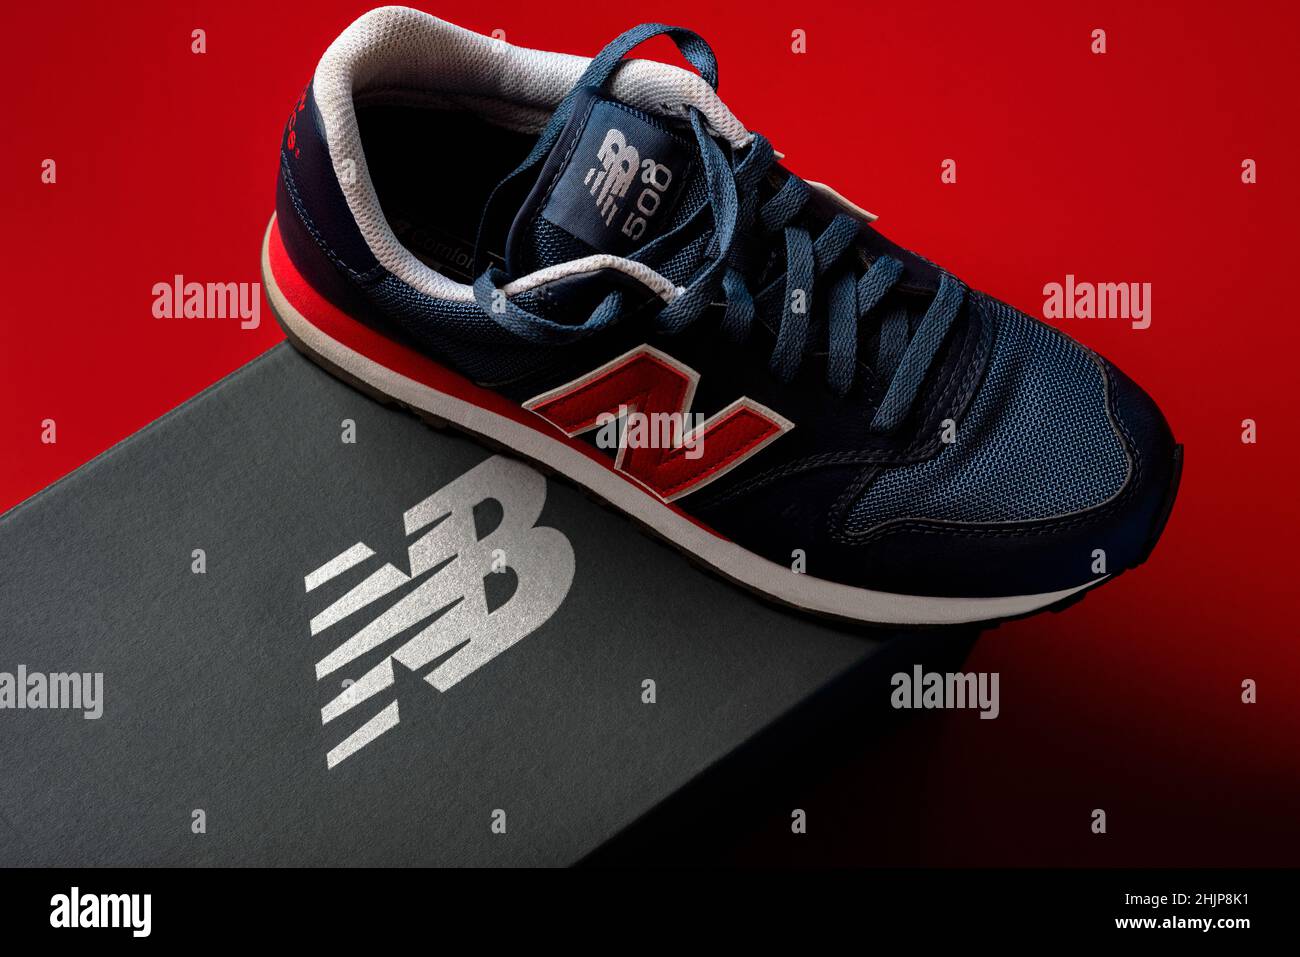 Nuove sneaker Balance 500 blu scuro con la scatola New Balance grigia su sfondo rosso. Scarpe sportive casual da primo piano Foto Stock